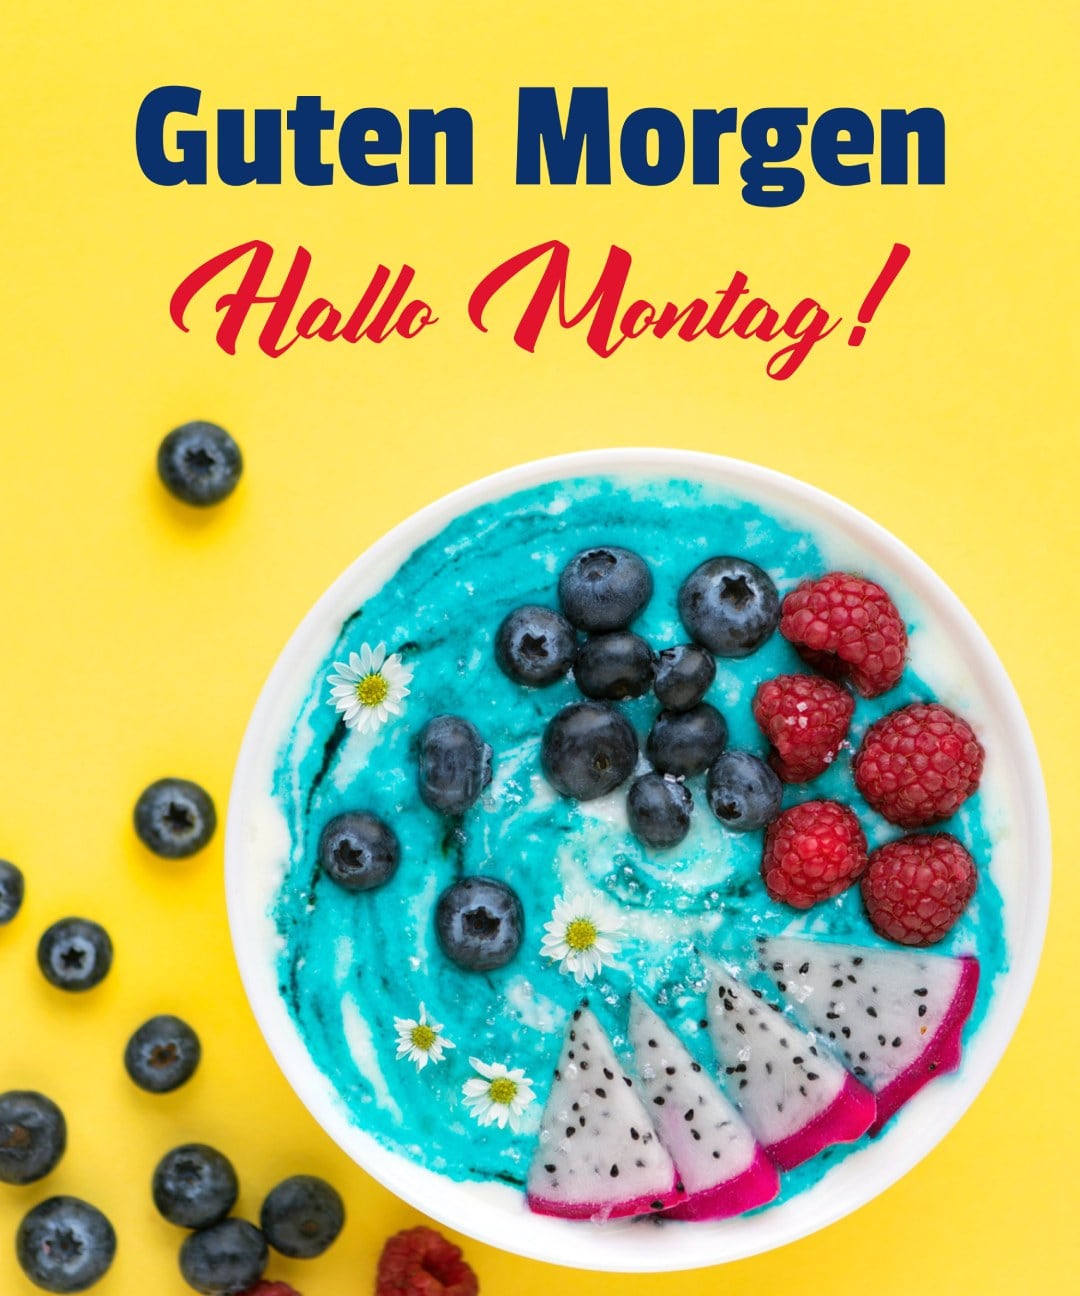 Blaue Frühstücksschüssel mit Blaubeeren, Himbeeren und Drachenfrüchten, mit Hallo Montag-Gruß